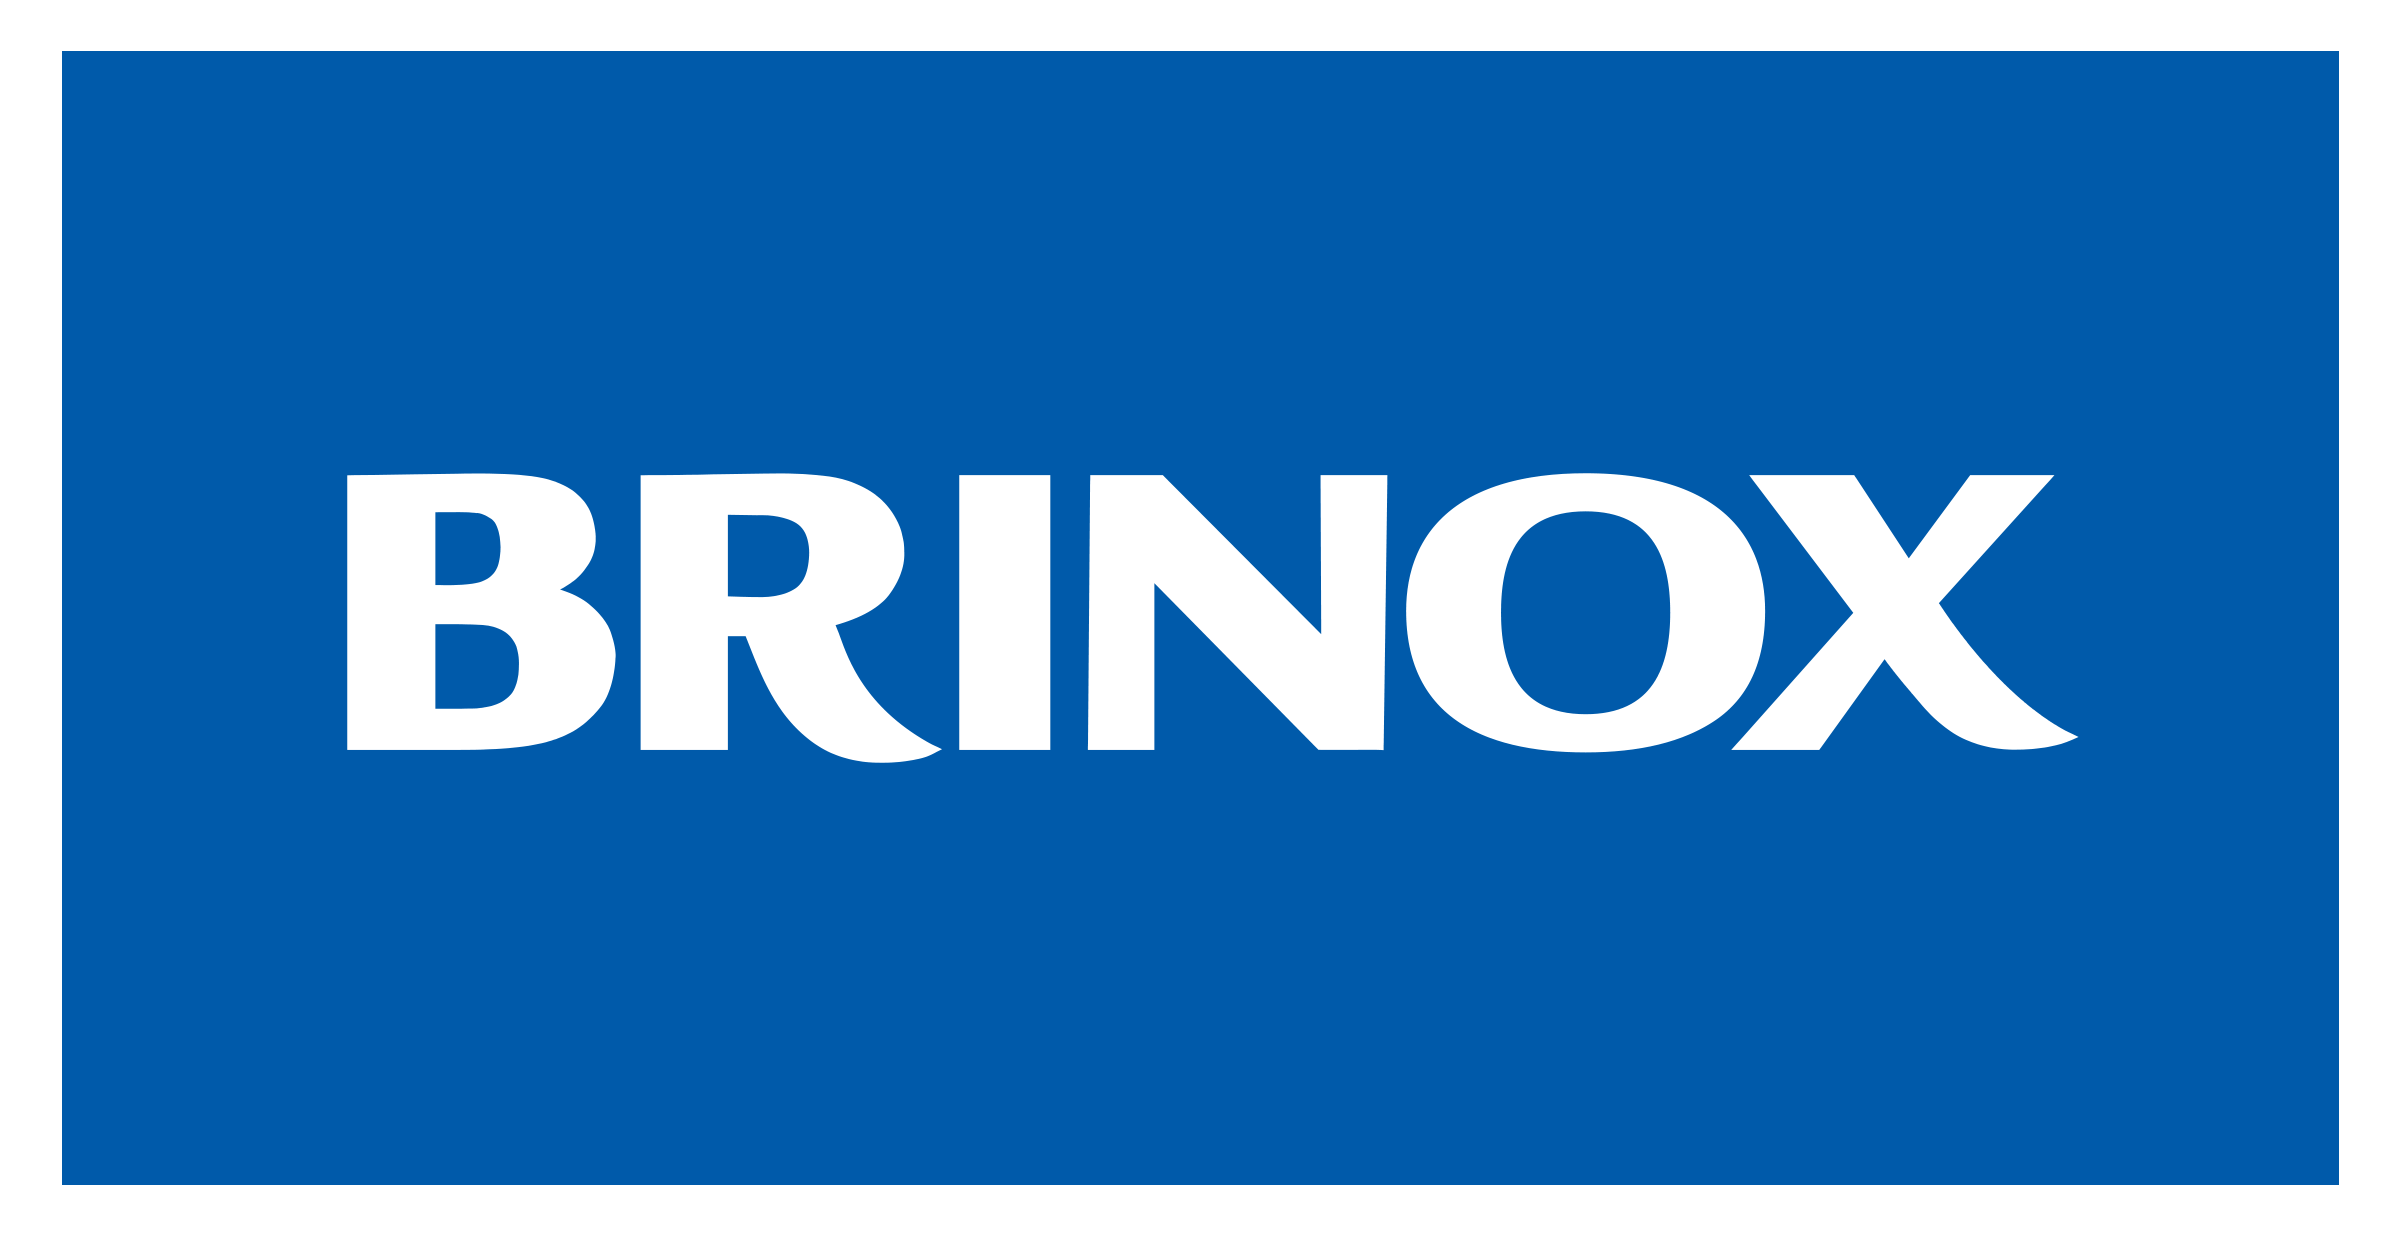 https://brinox.vteximg.com.br/arquivos/logo-07-23.png?v=1